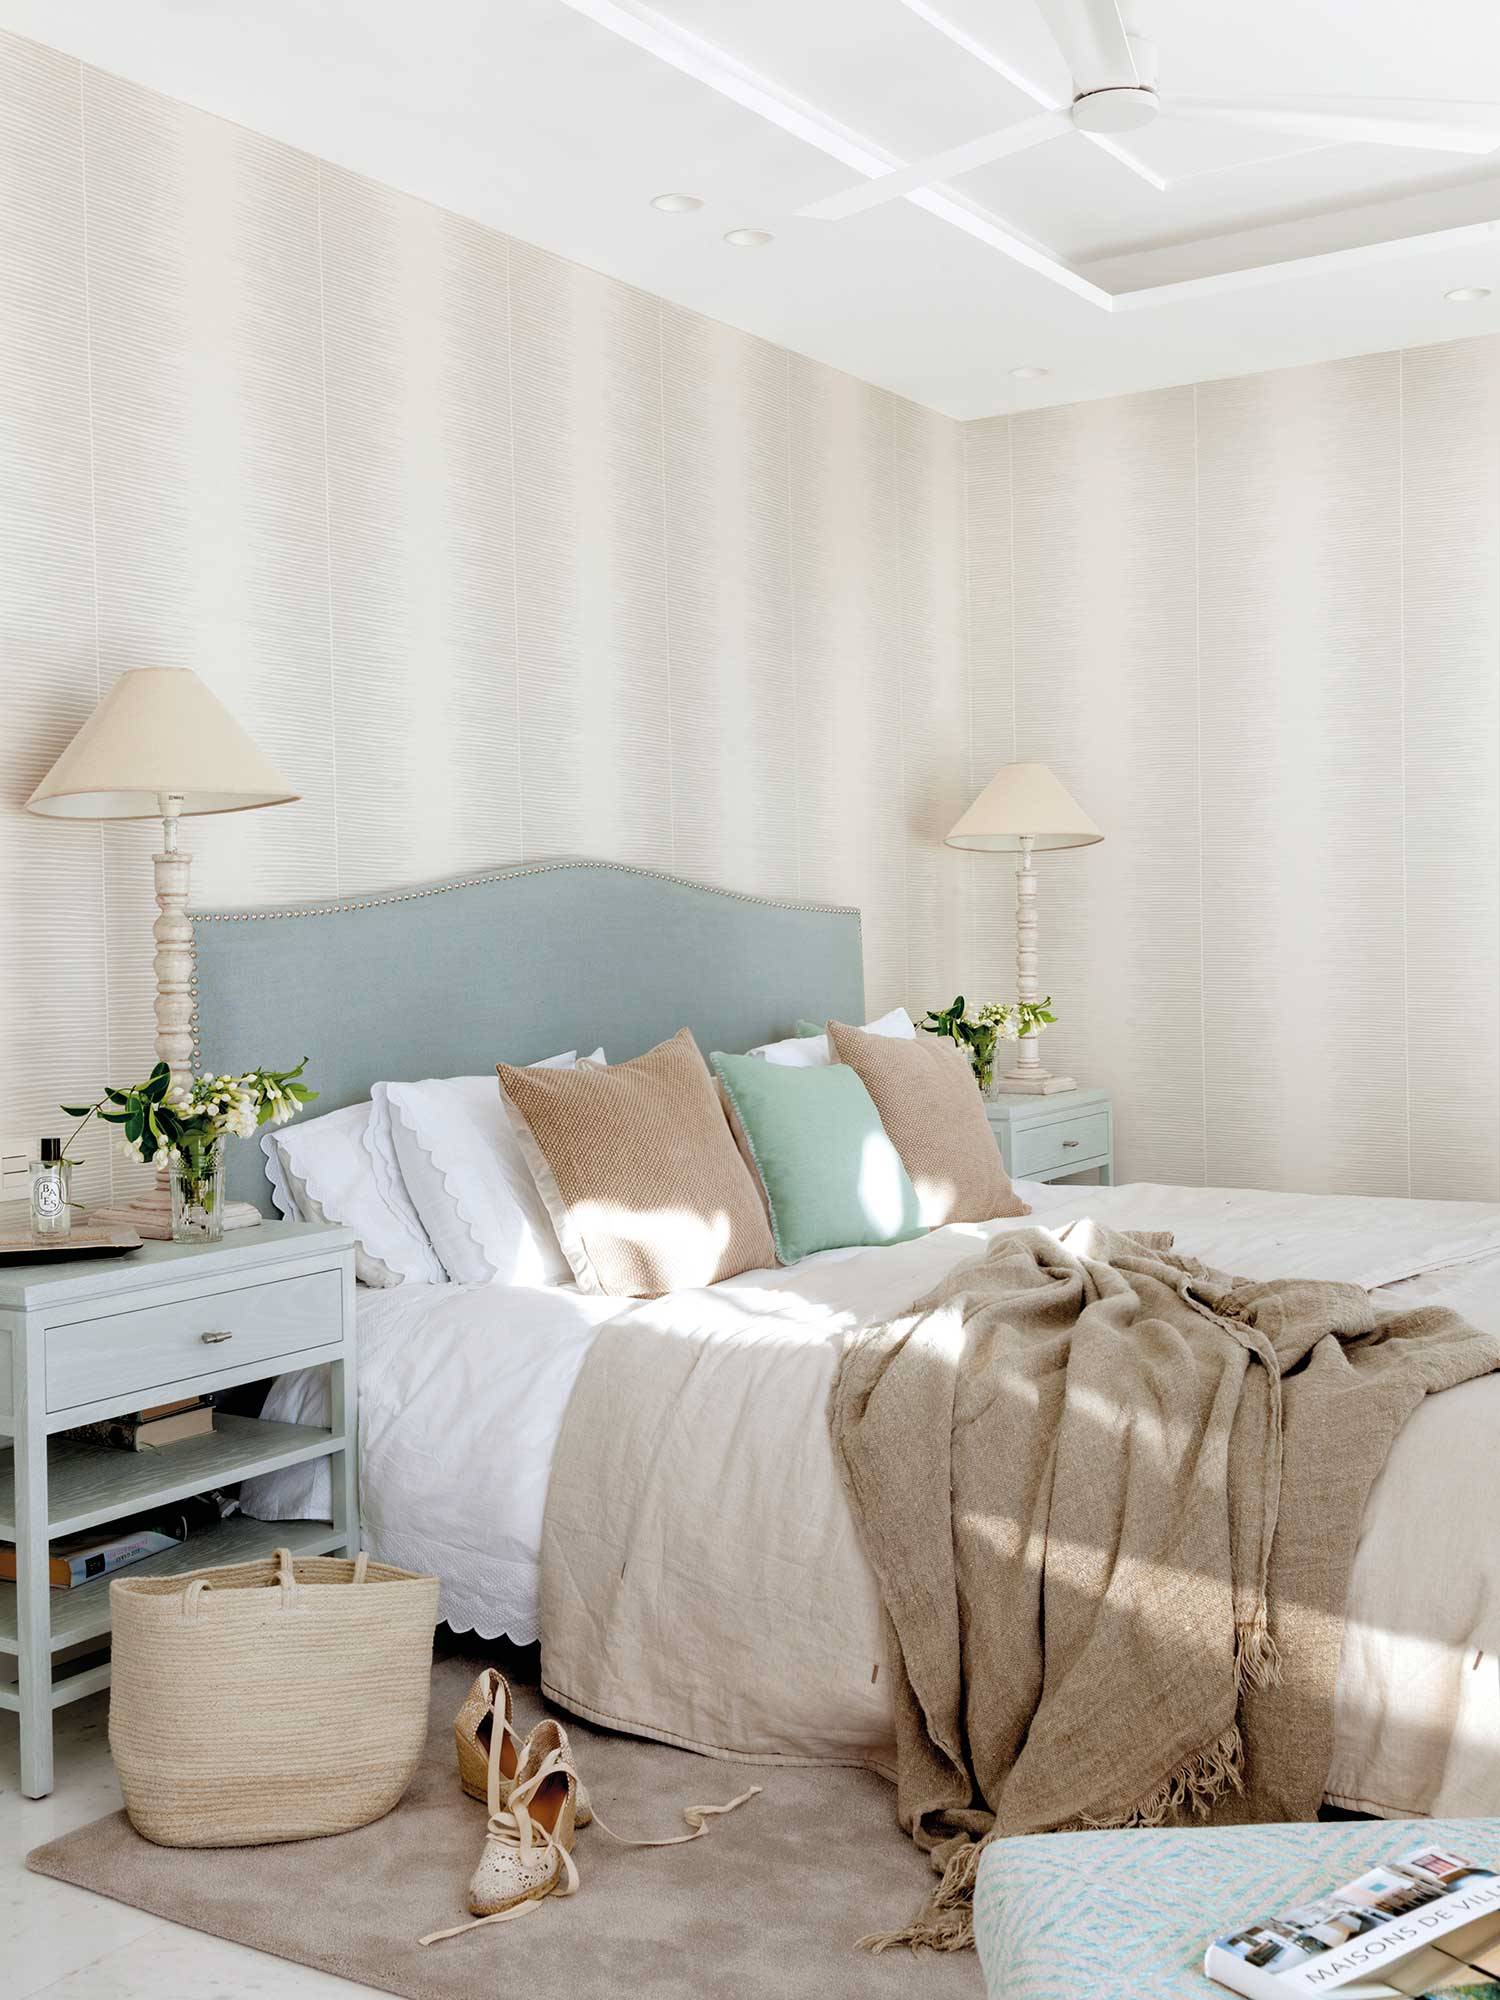 Dormitorio con papel pintado de franjas difuminadas.